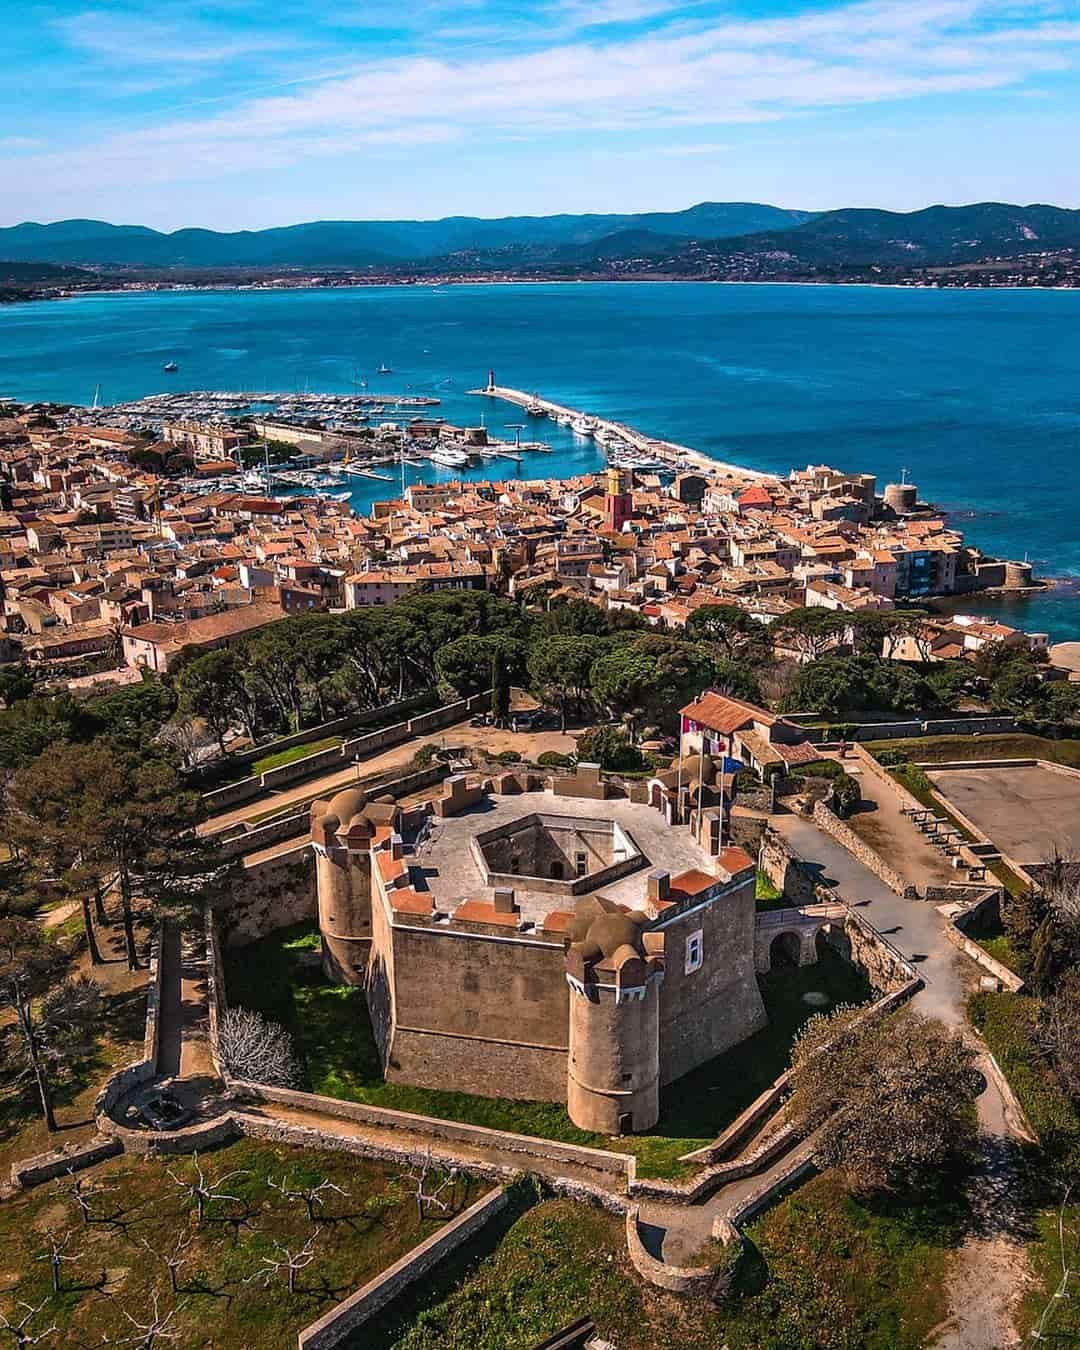 Citadel,Old Town, Saint-Tropez, France